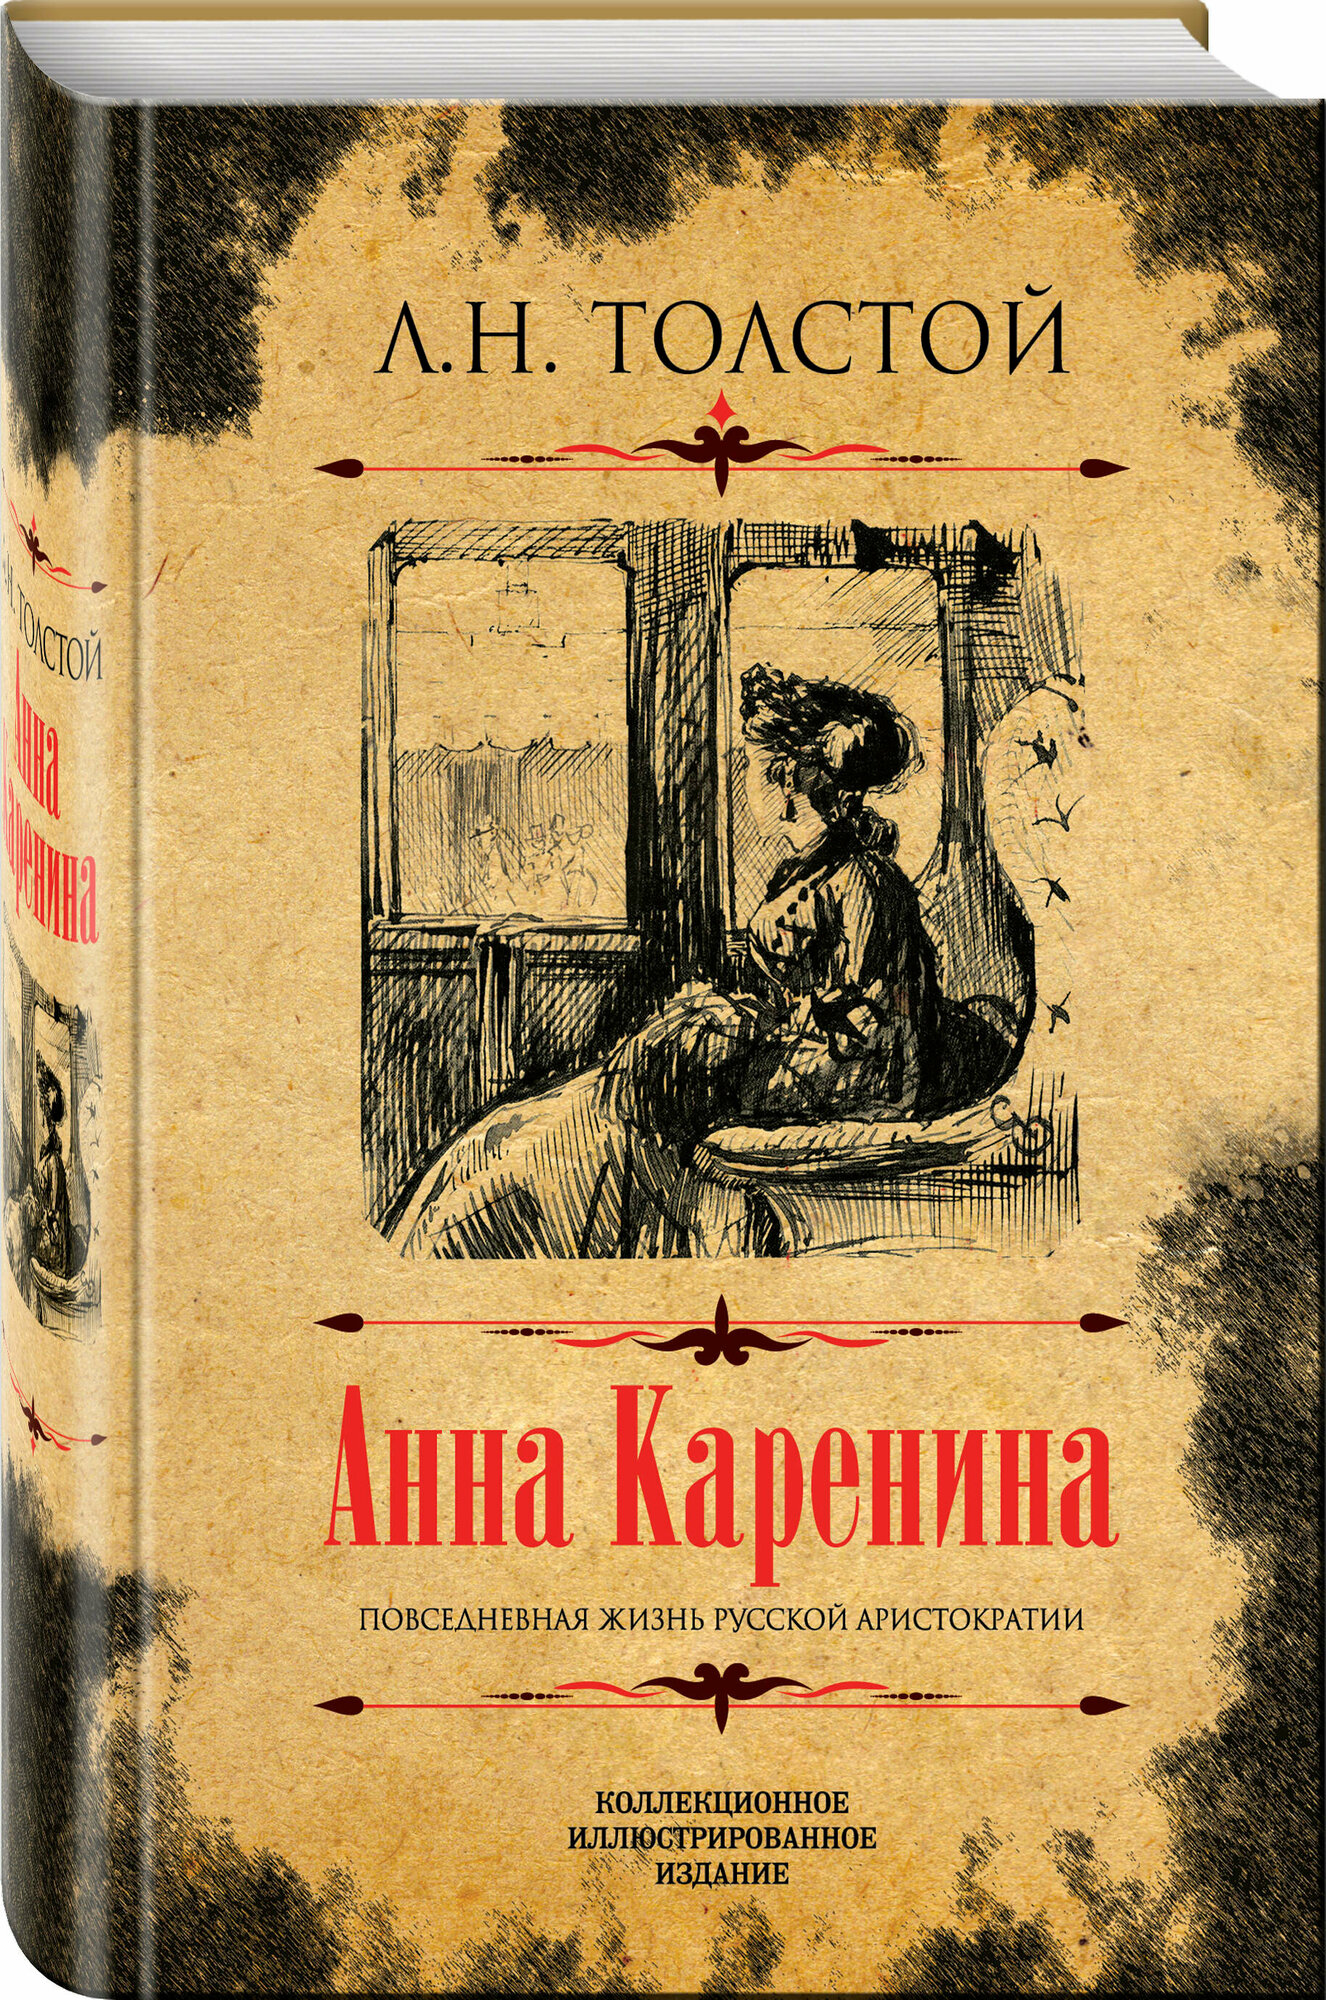 Толстой Л. Н. Анна Каренина. Коллекционное иллюстрированное издание